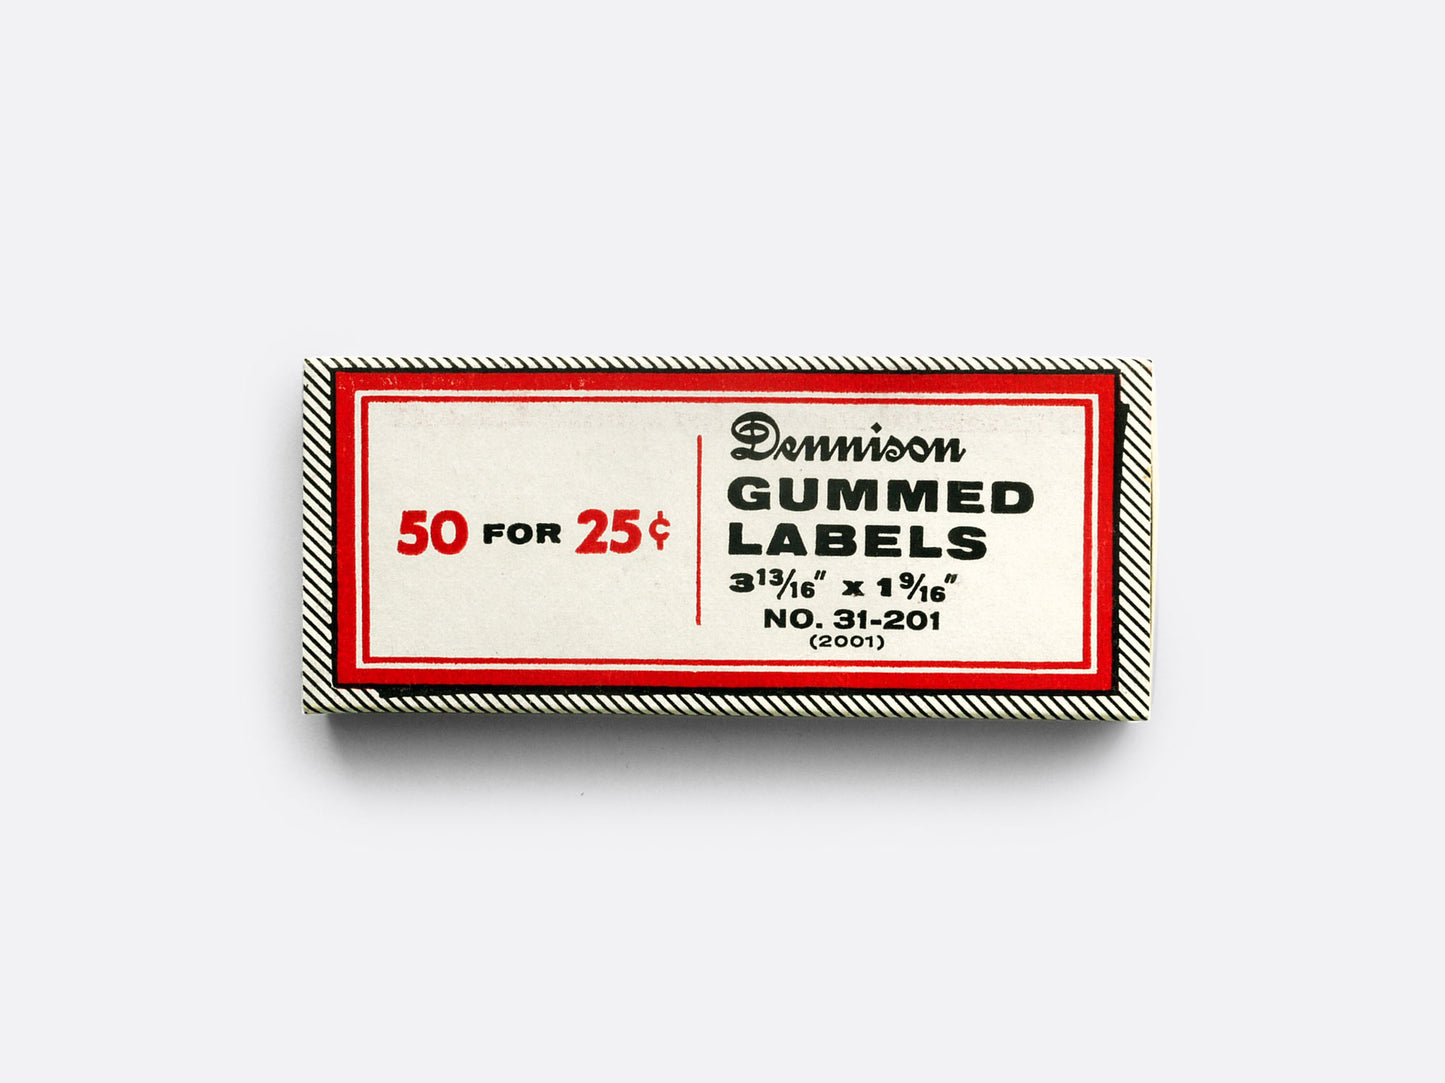 Dennison Gummed Labels (1970s)